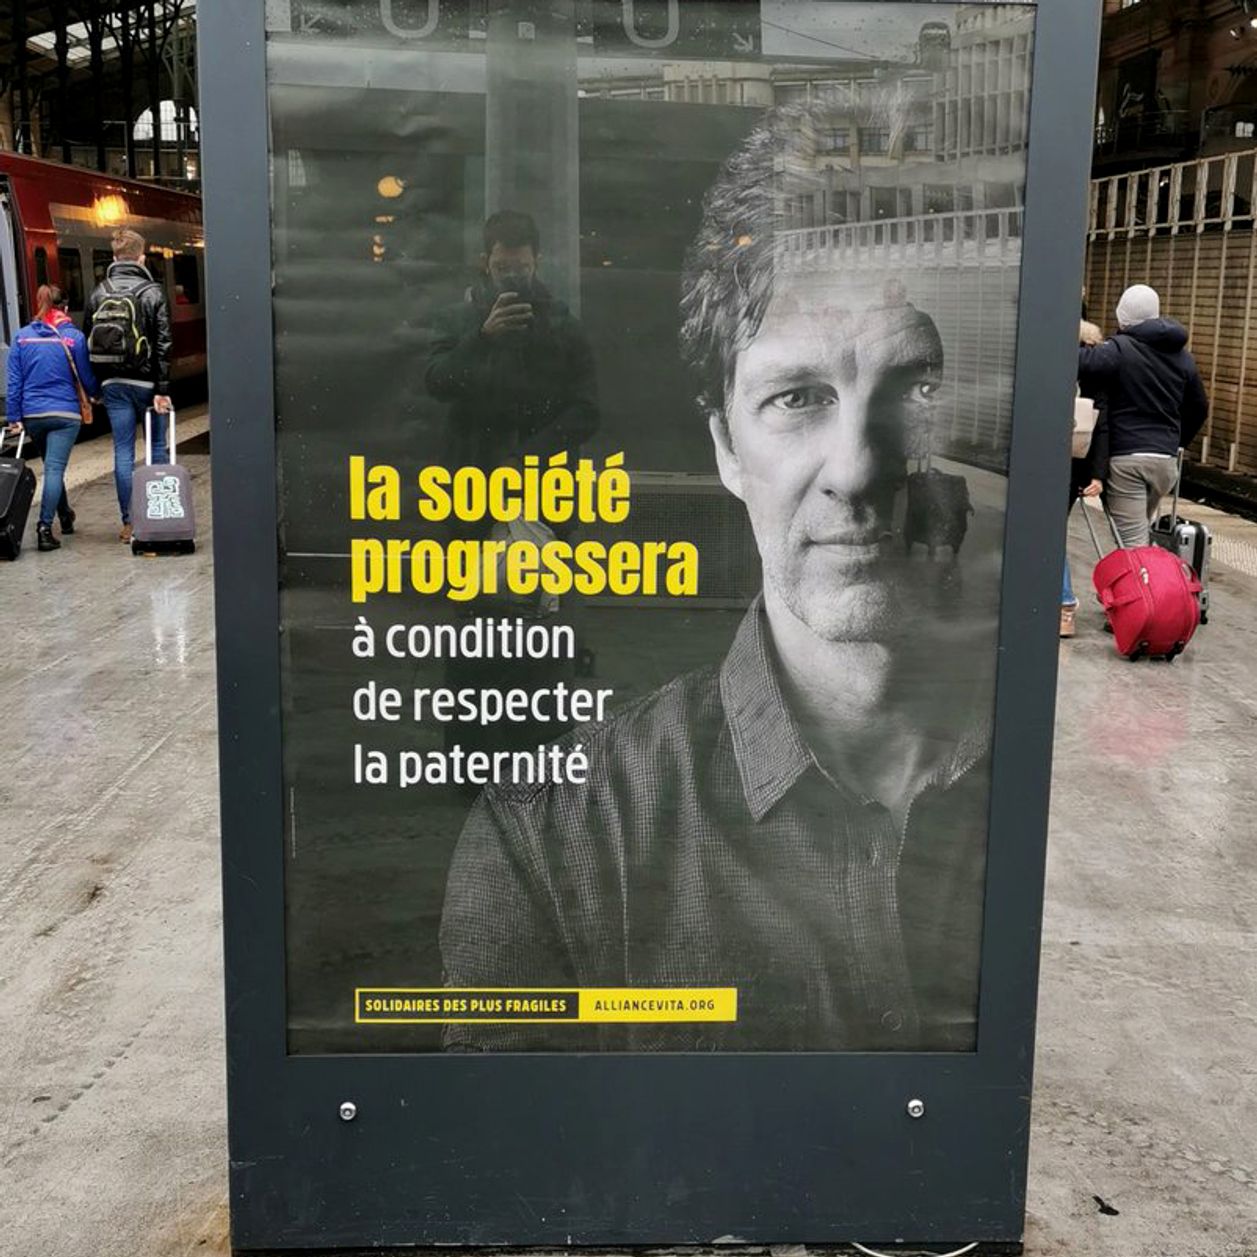 Des affiches anti-PMA et anti-IVG dans les gares parisiennes choquent la Toile